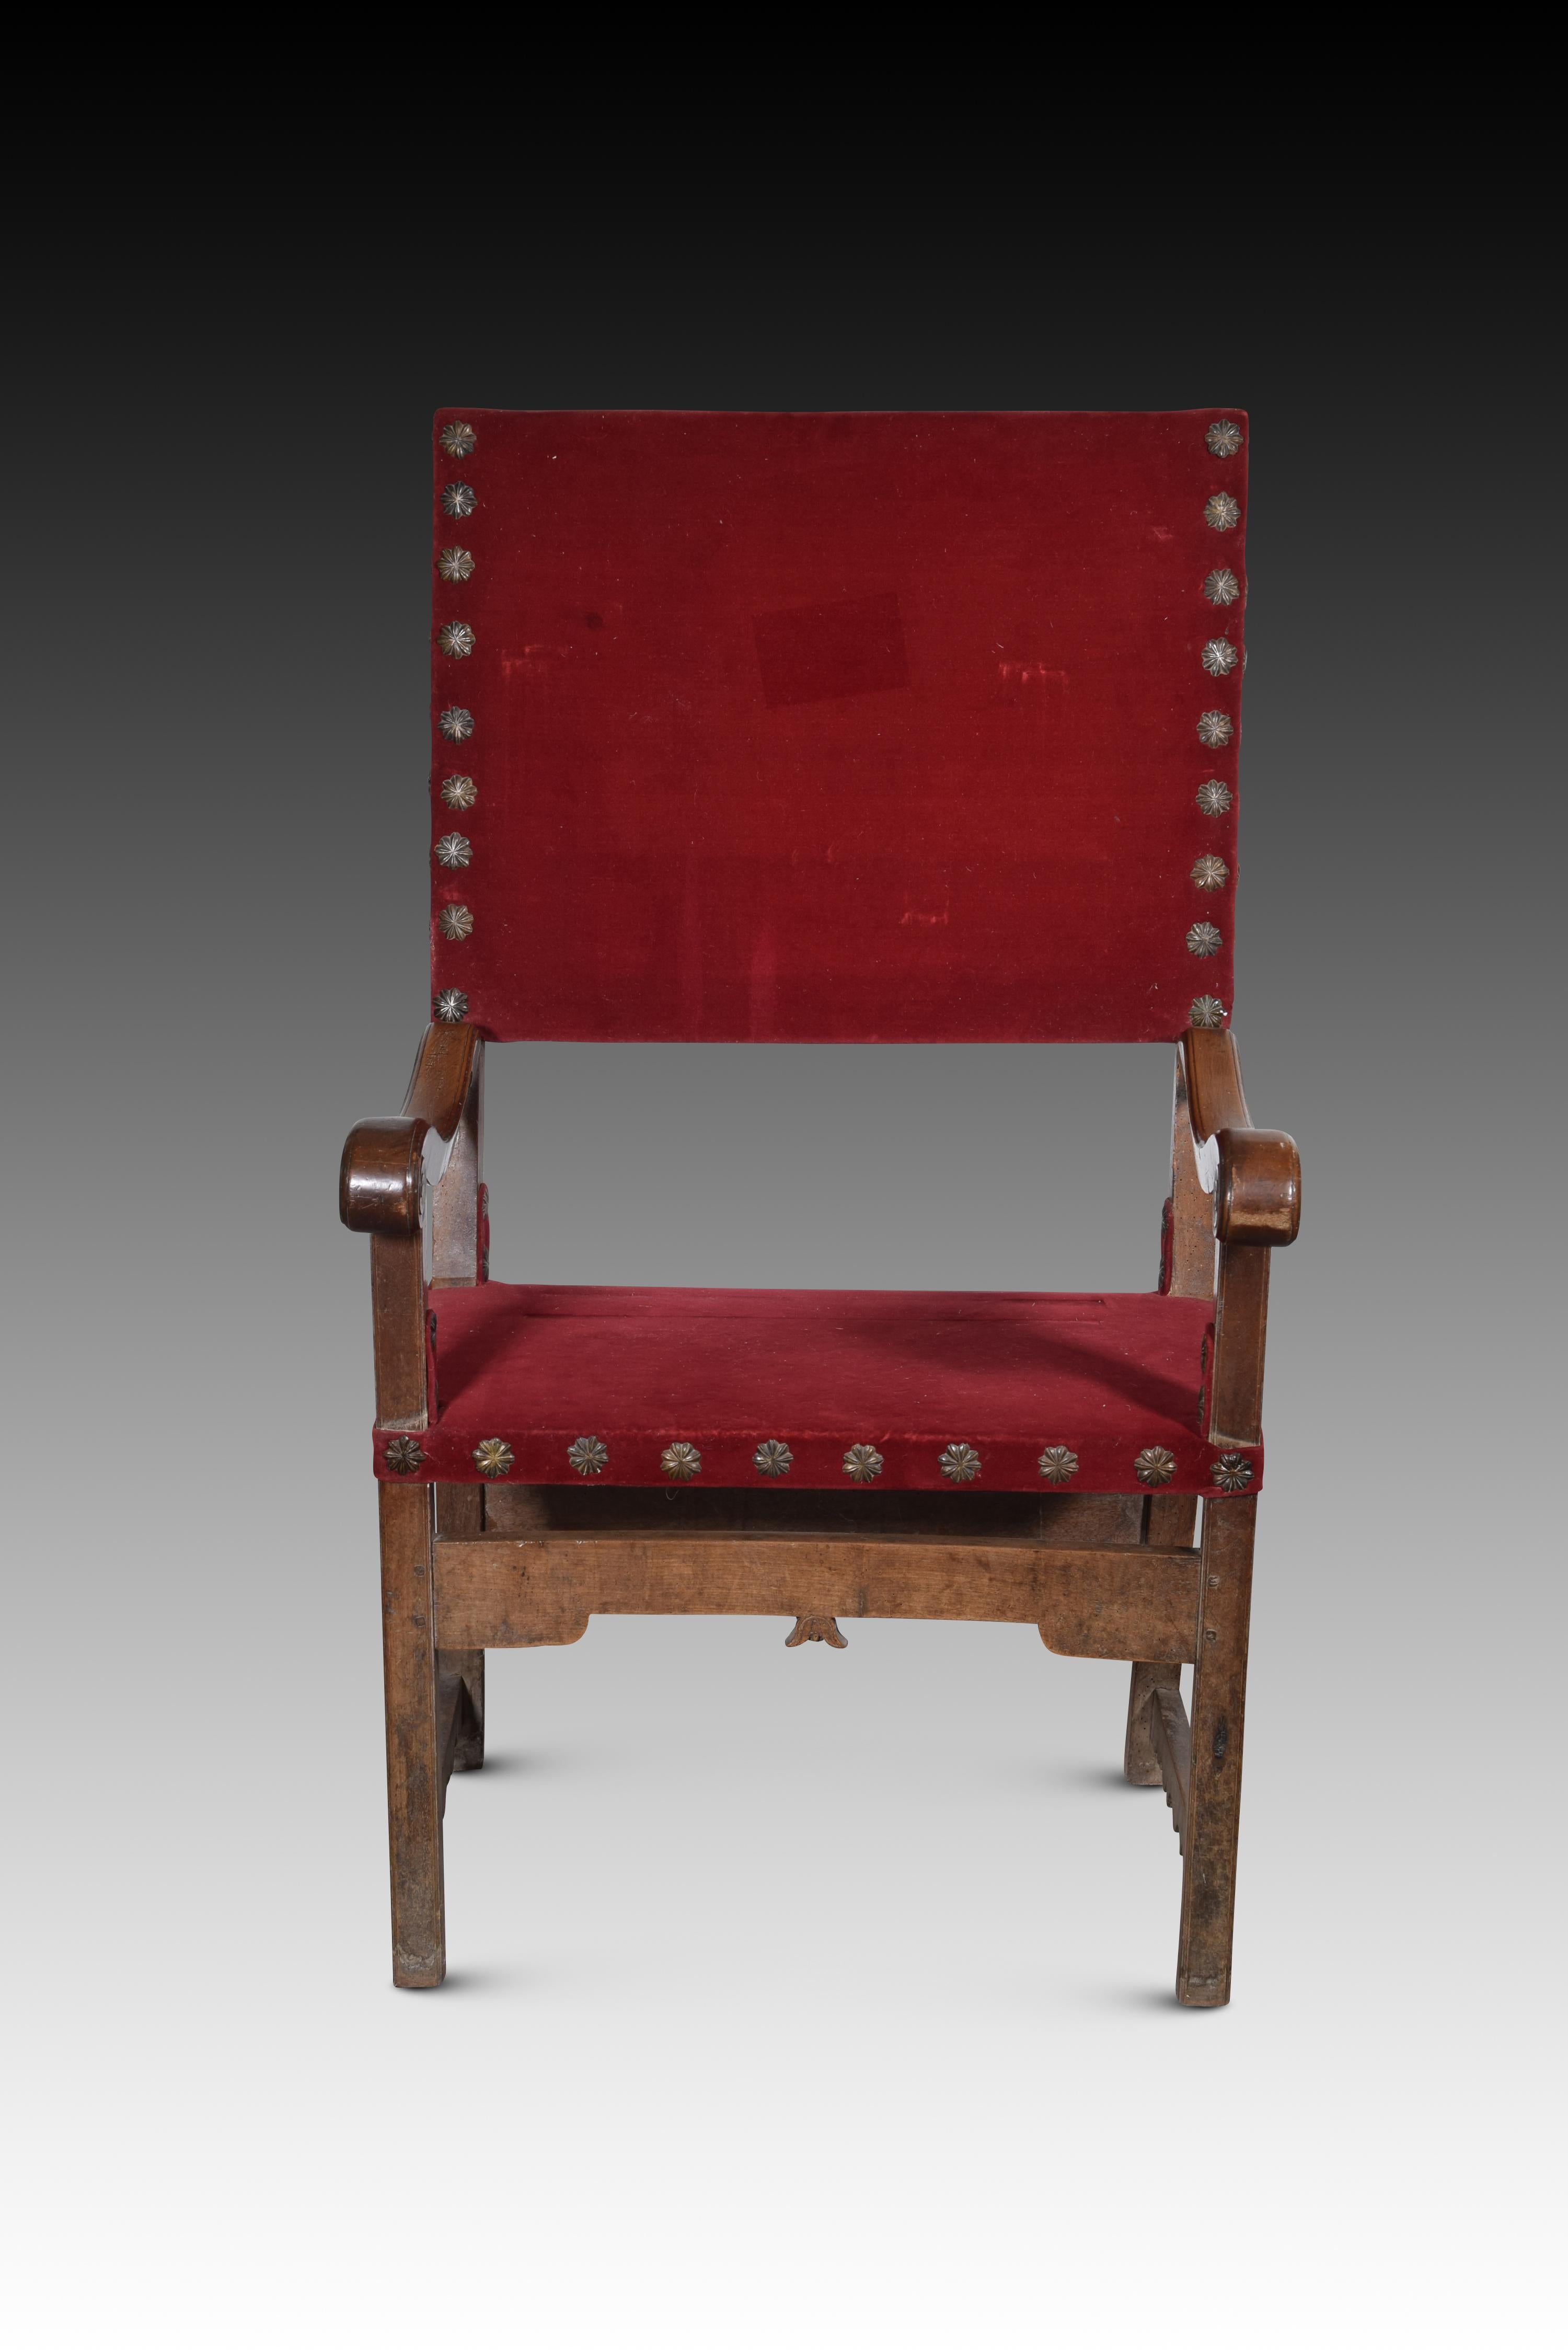 Bruder Sessel. Walnussholz, Textilien. Spanien, 17. Jahrhundert. 
Sessel mit Armlehnen und hoher Rückenlehne des Typs 